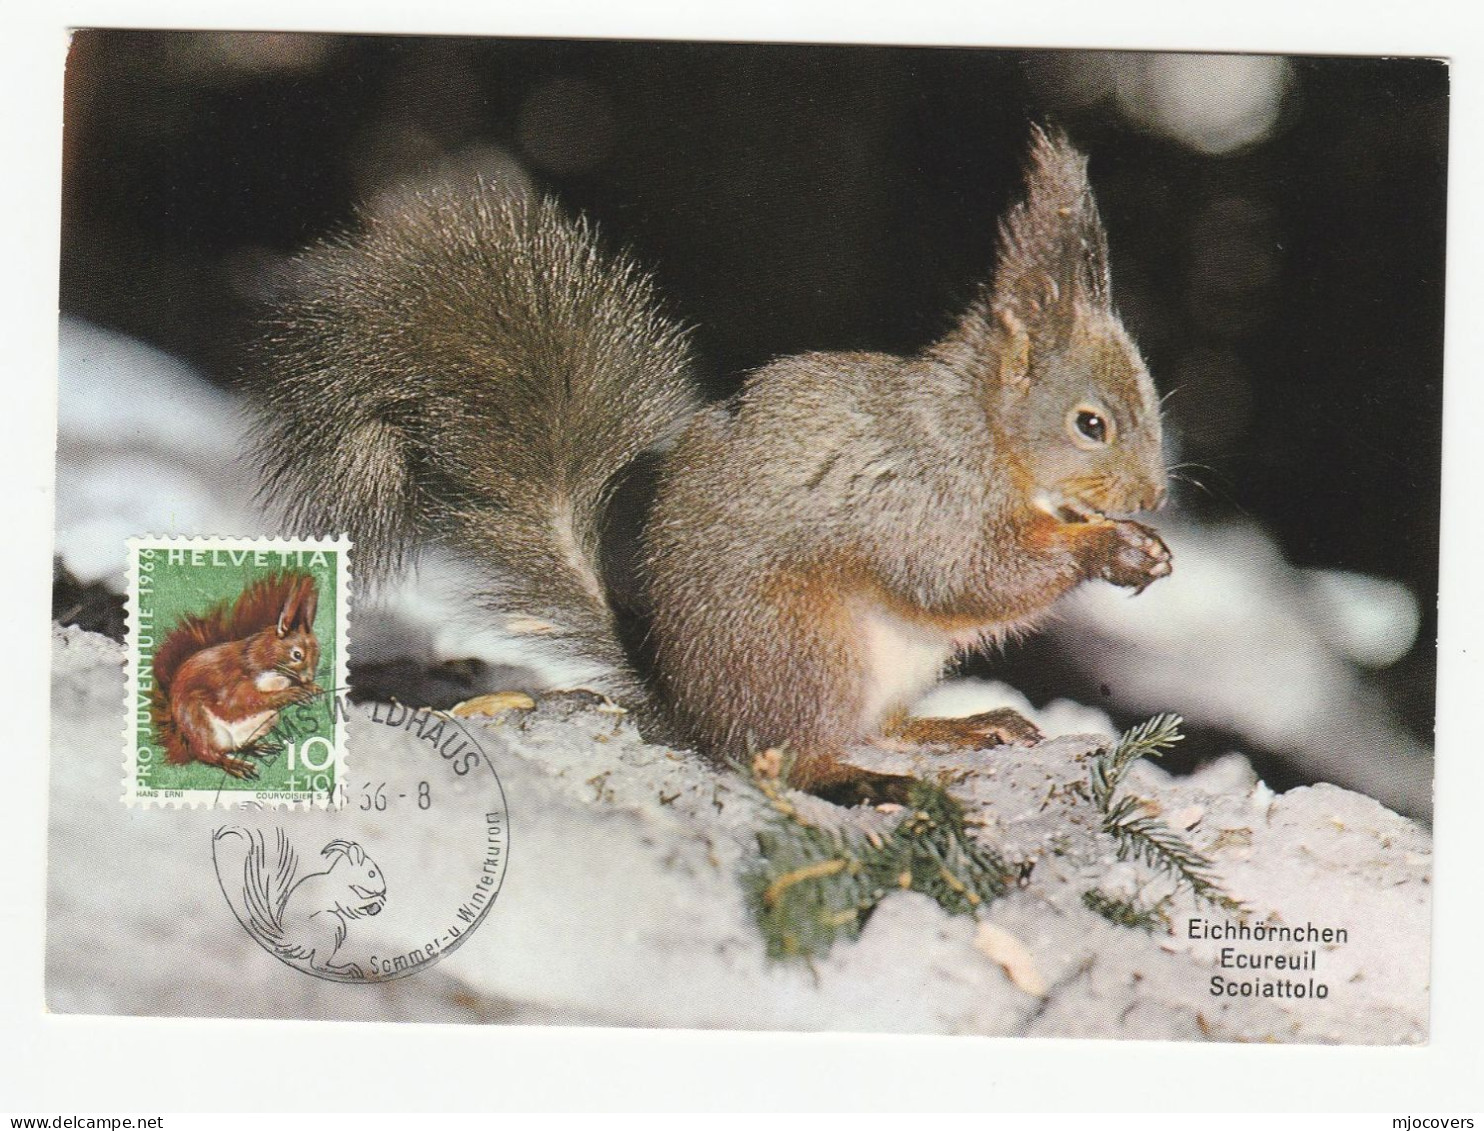 1966 SQUIRREL Maximum CARD Switzerland Stamps Fdc Cover Postcard - Maximumkarten (MC)